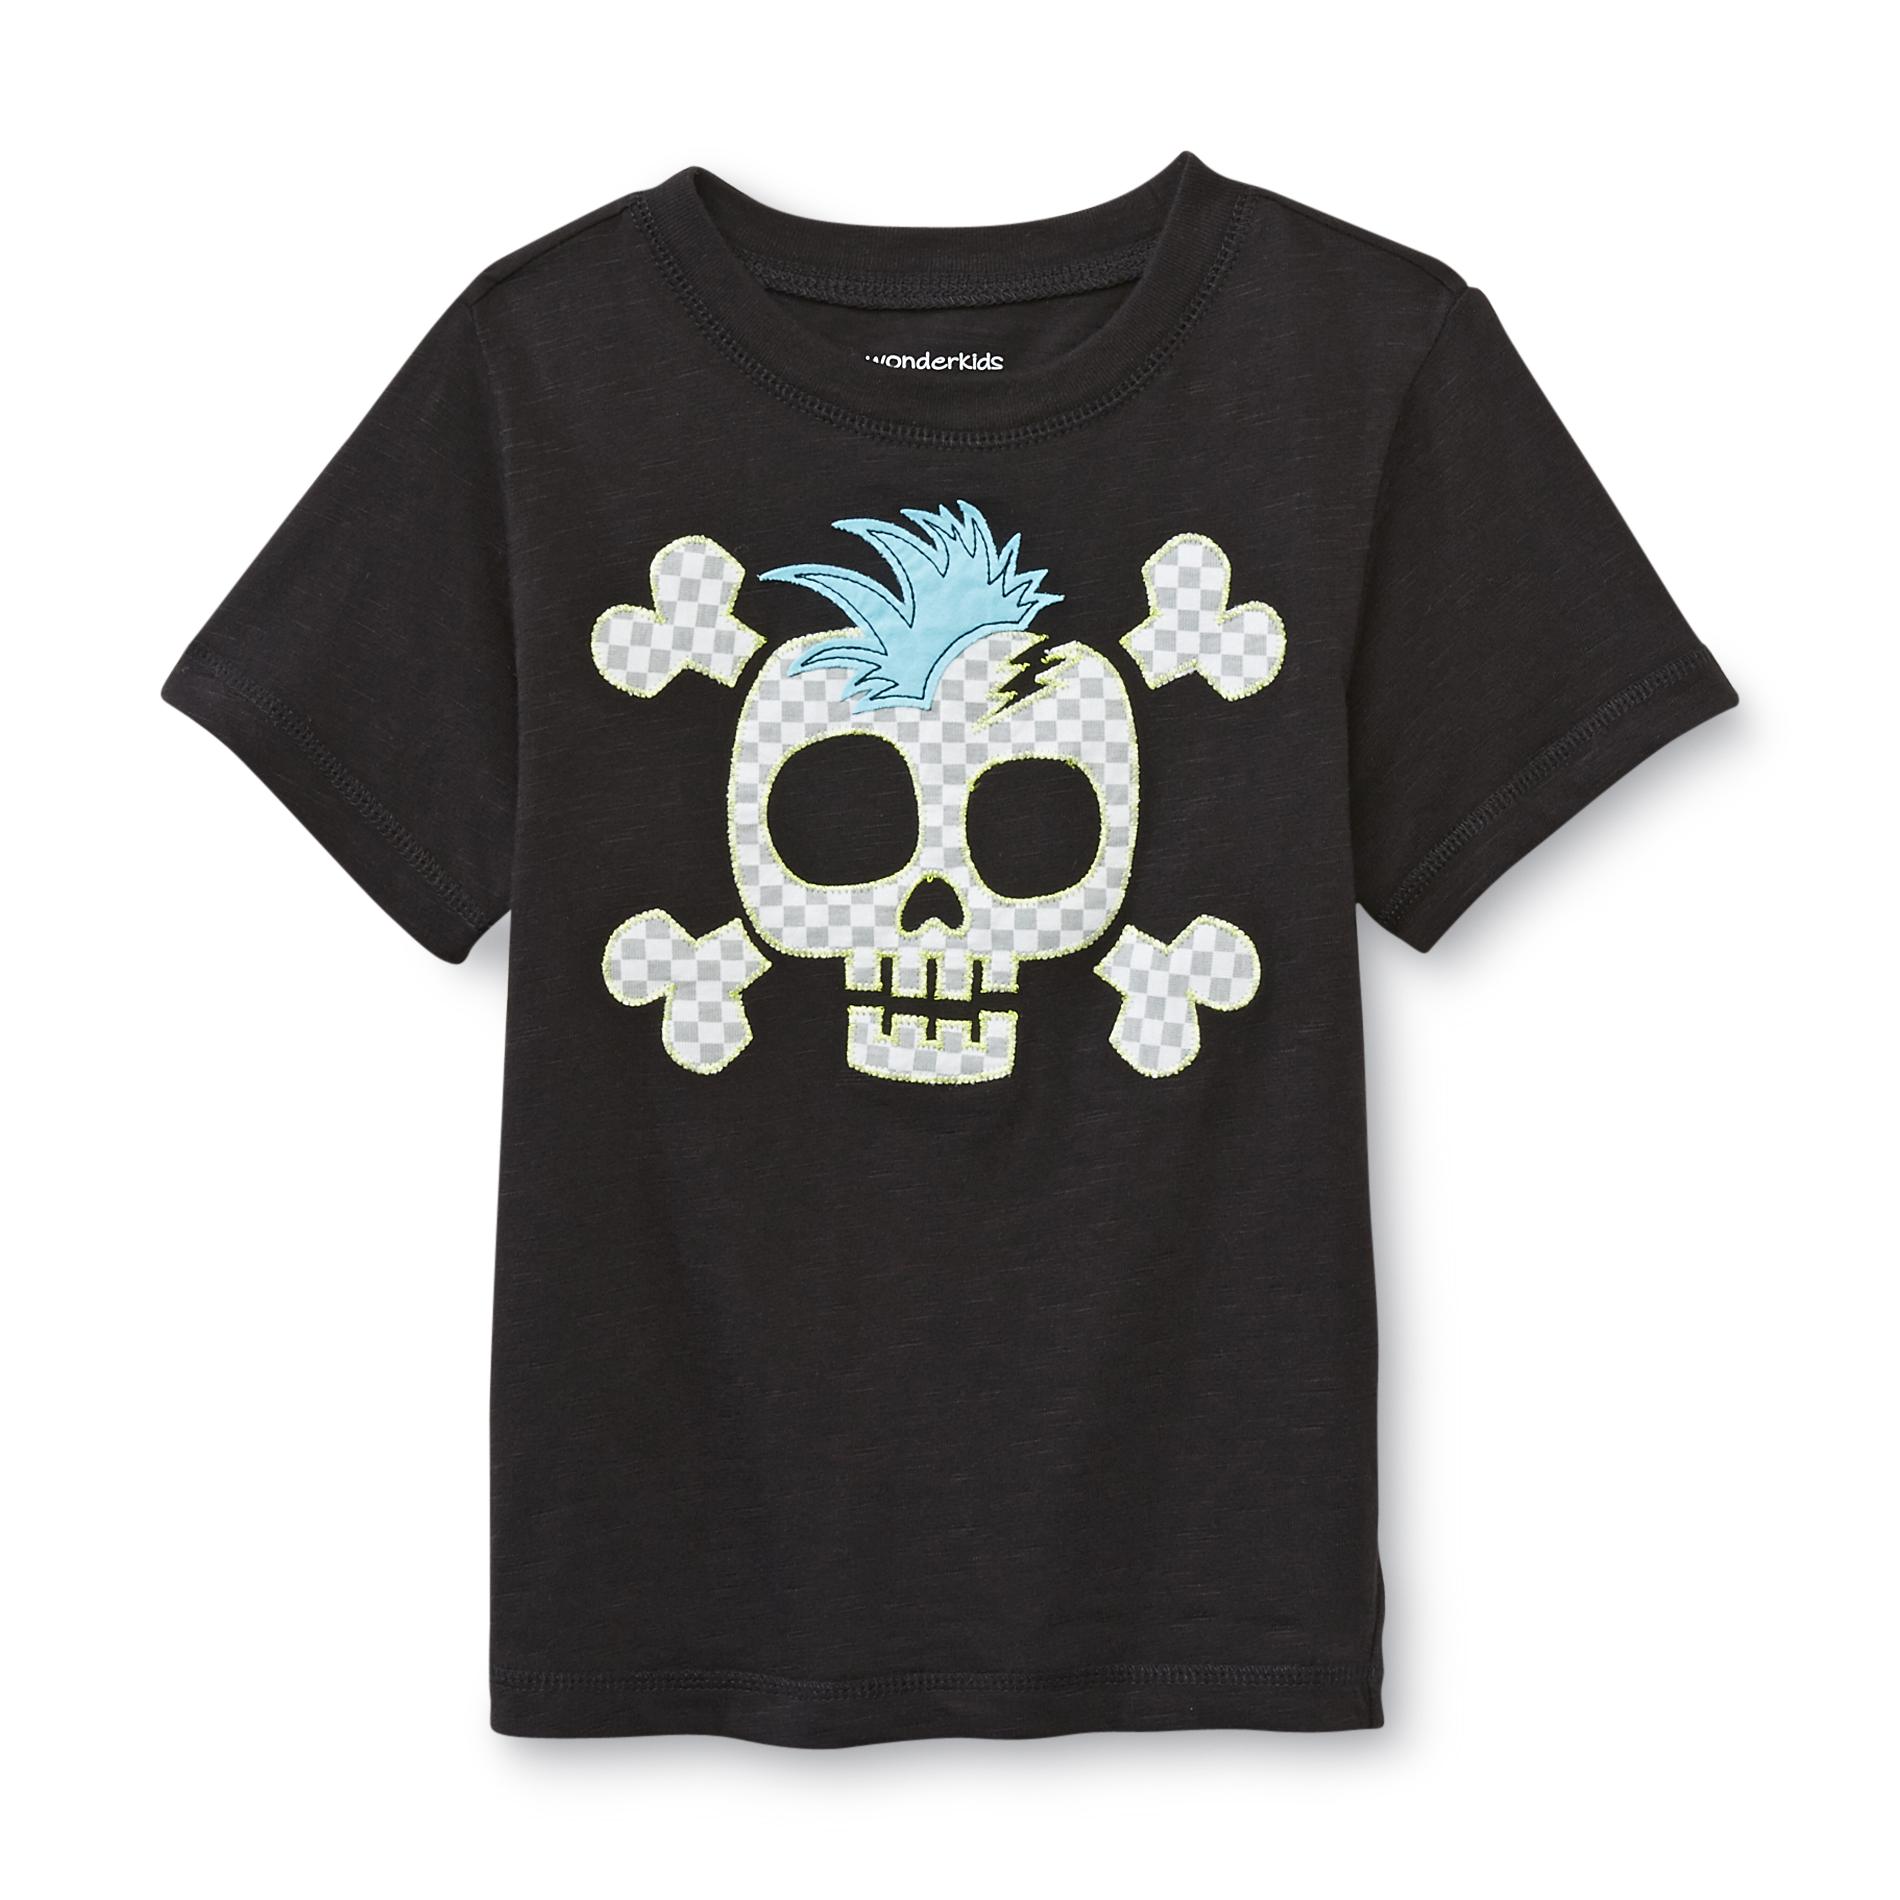 WonderKids Infant & Toddler Boy's Graphic T-Shirt - Skull